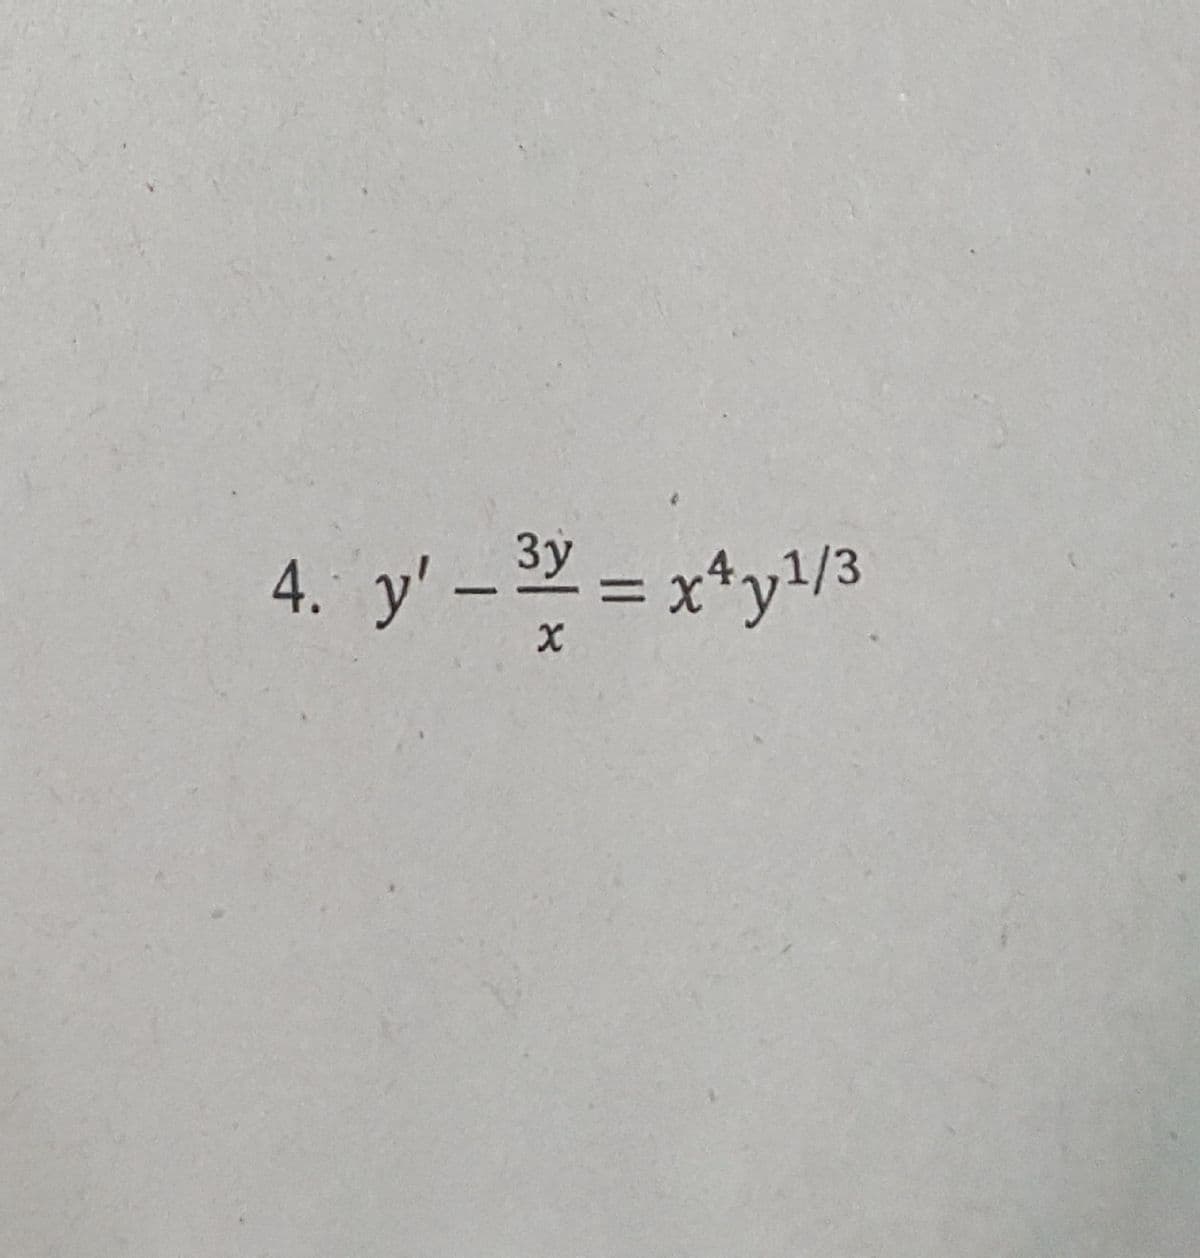 4. y' – 2 = x*y/3
%D
